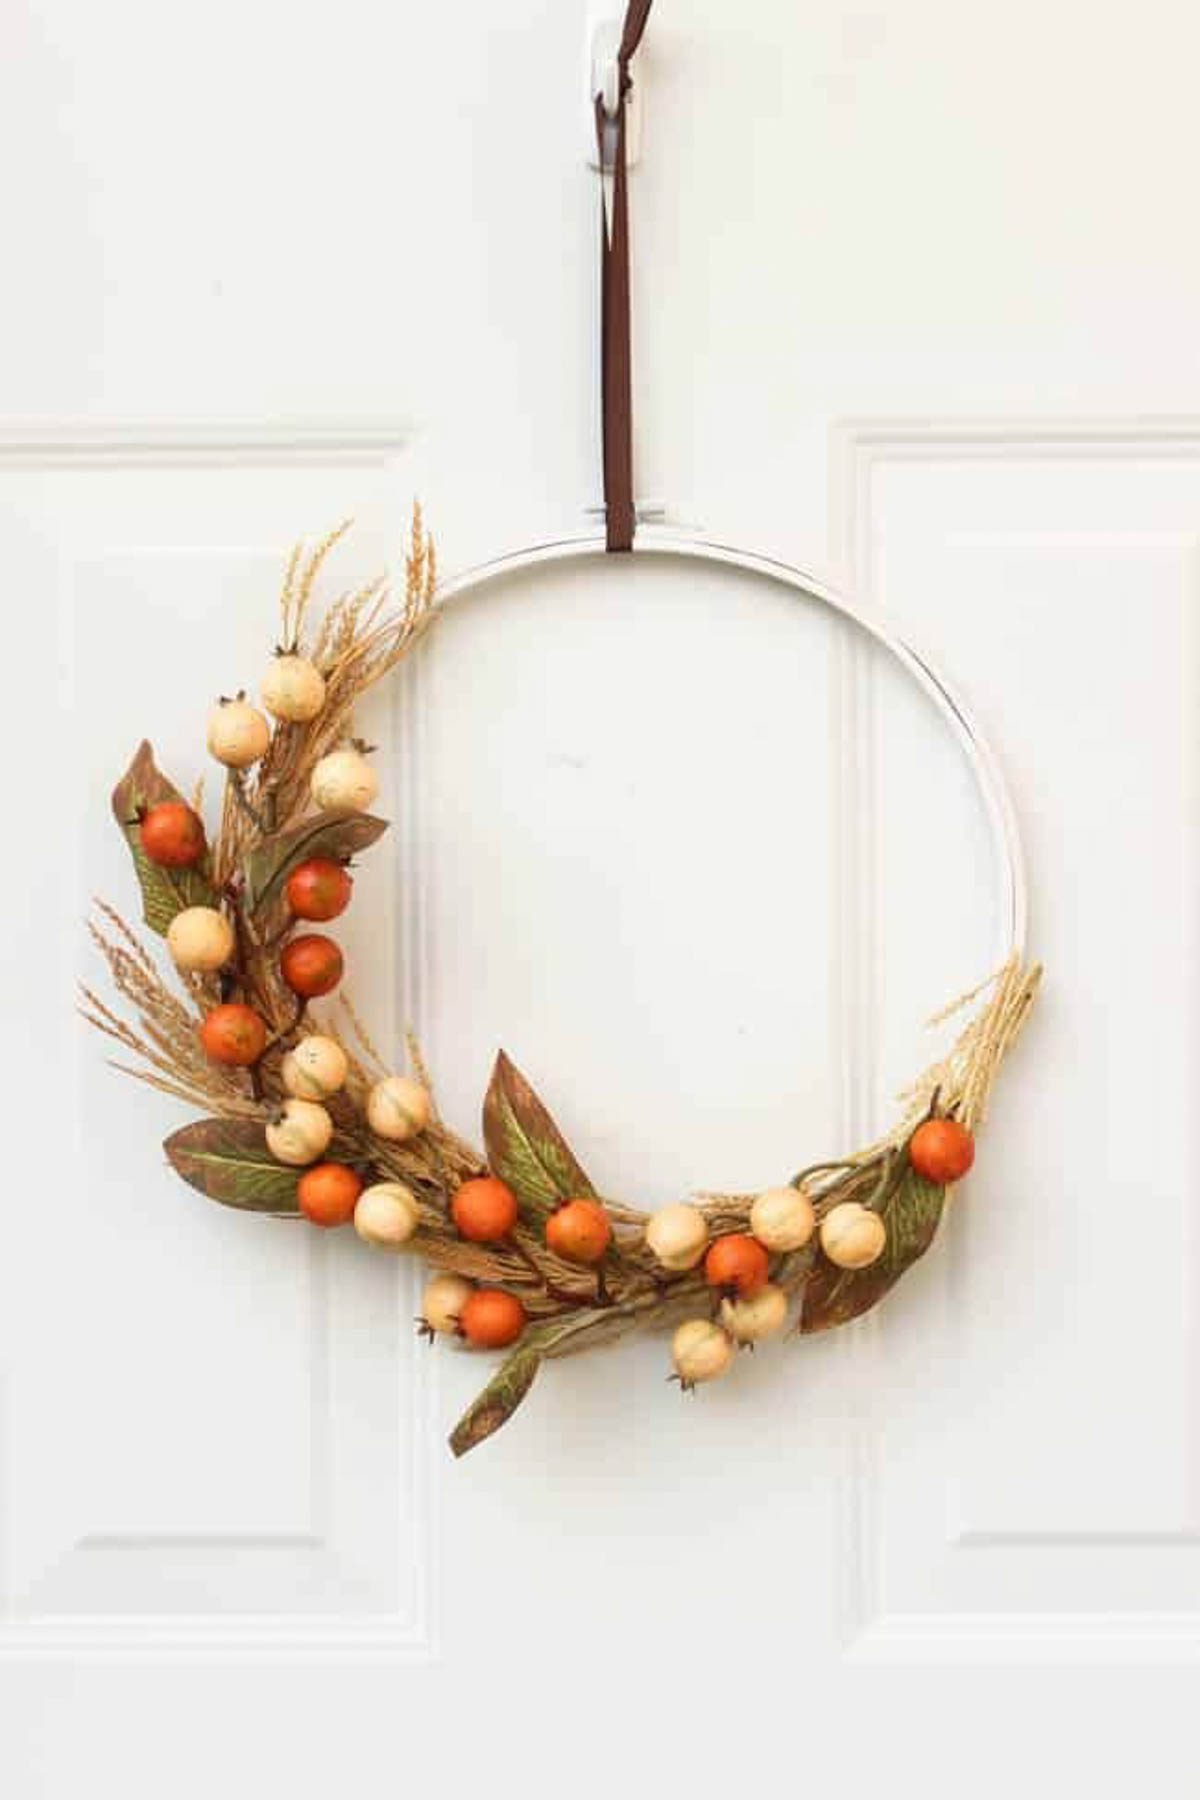 Autumn embroidery hoop wreath hanging on a door.